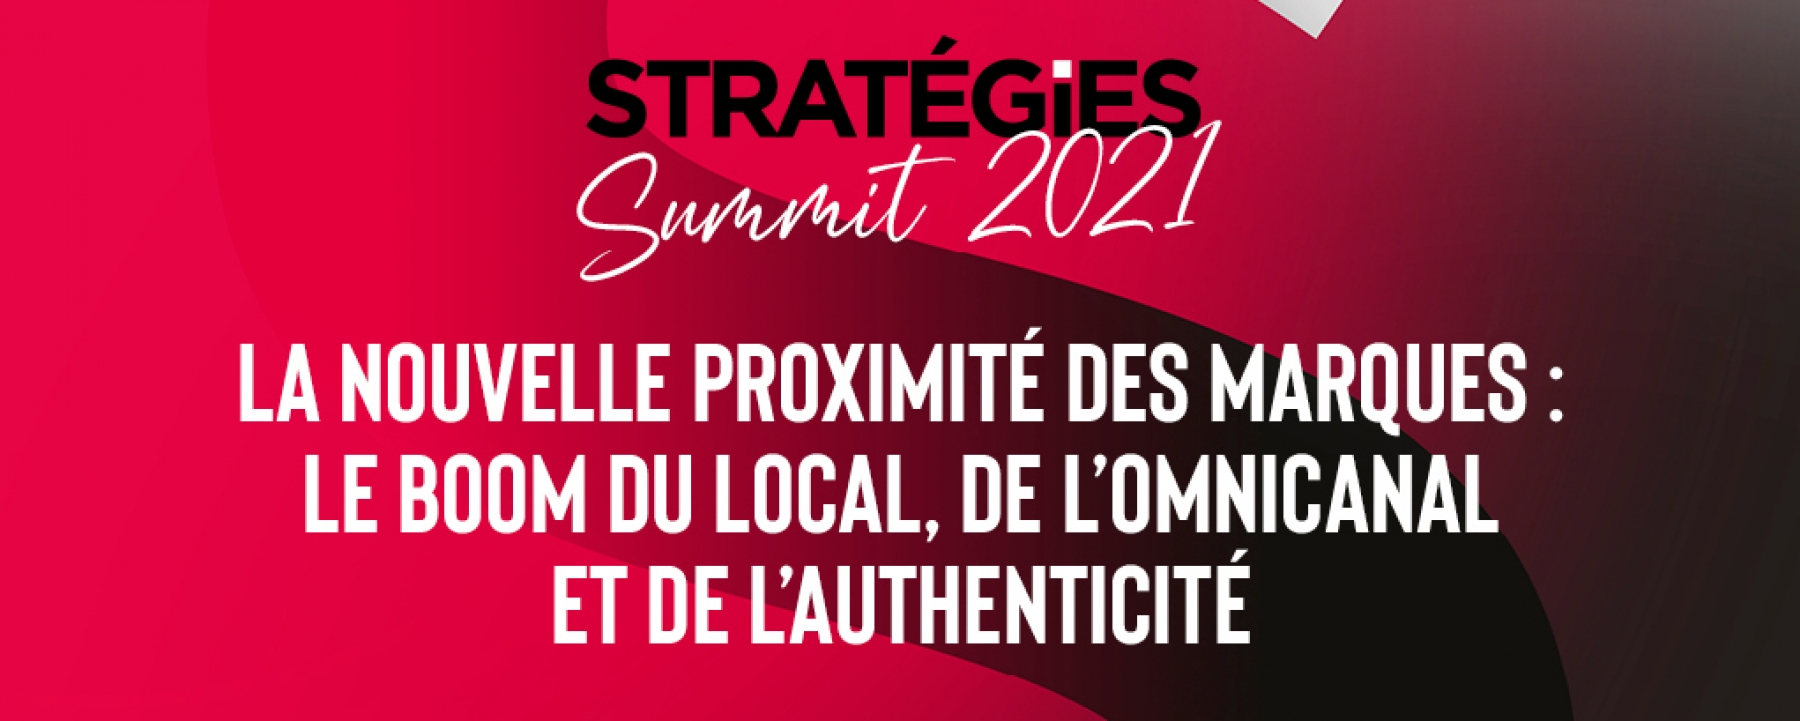 Stratégies Summit 2021 le 15 septembre